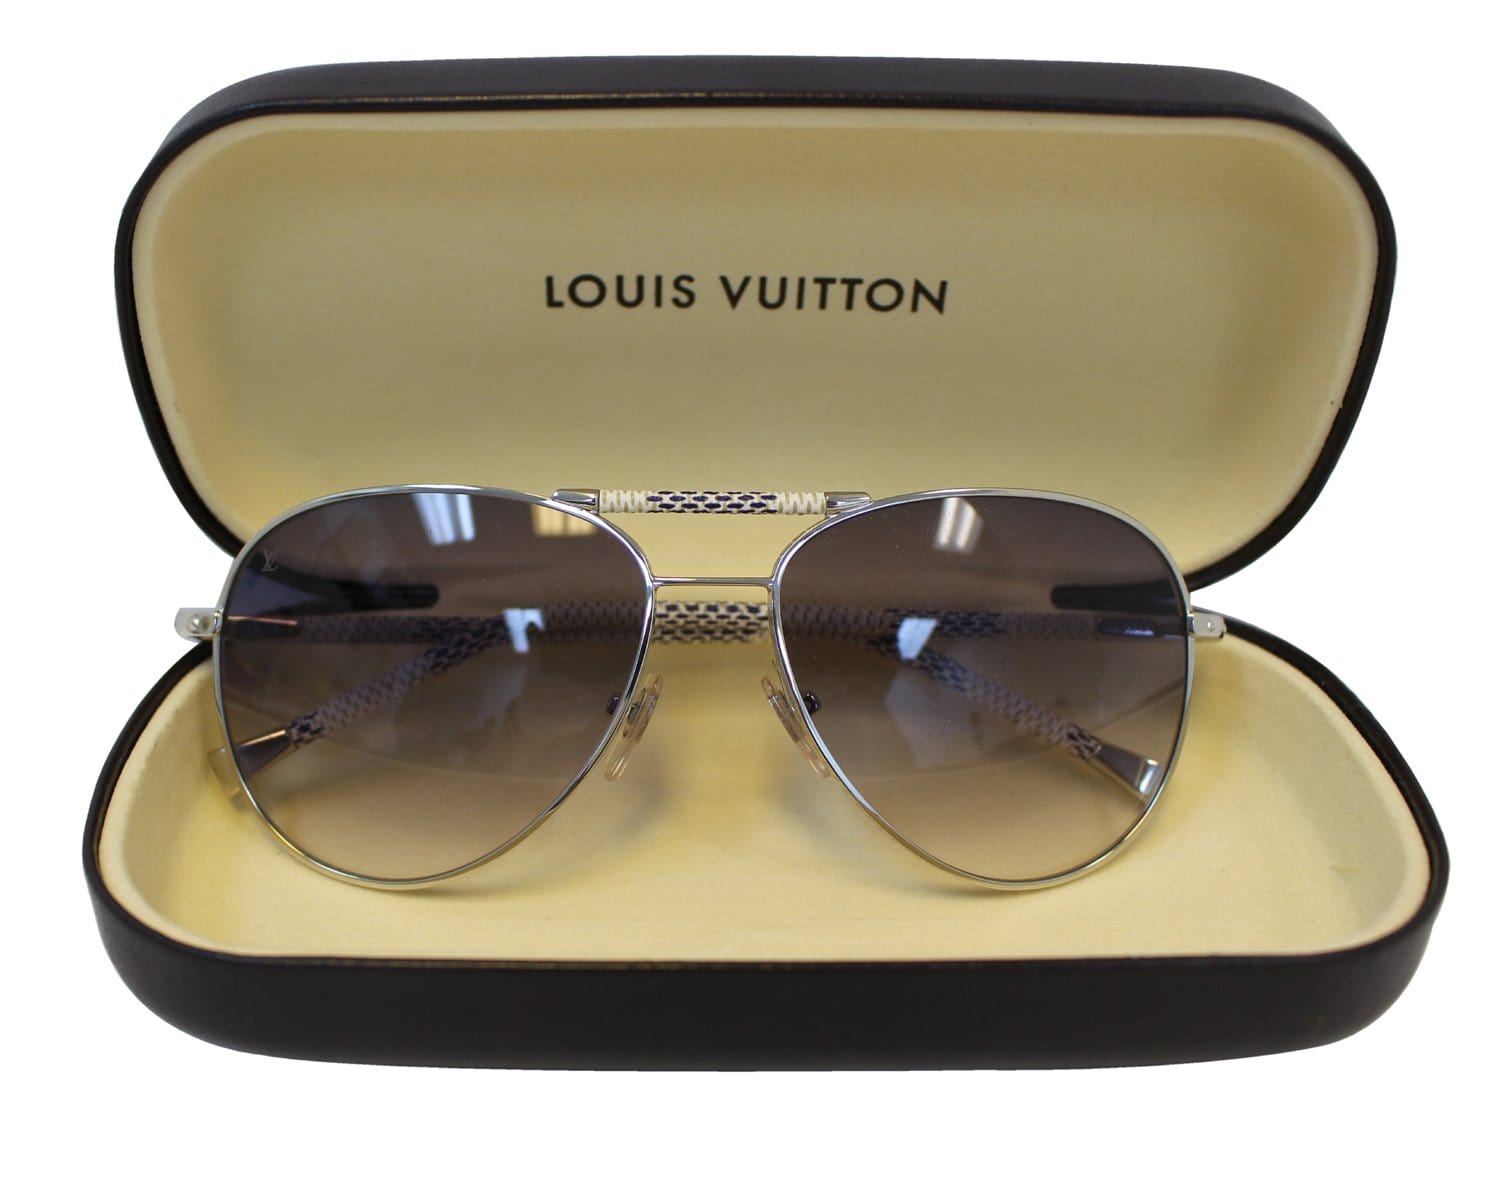 LOUIS VUITTON sunglasses - VALOIS VINTAGE PARIS